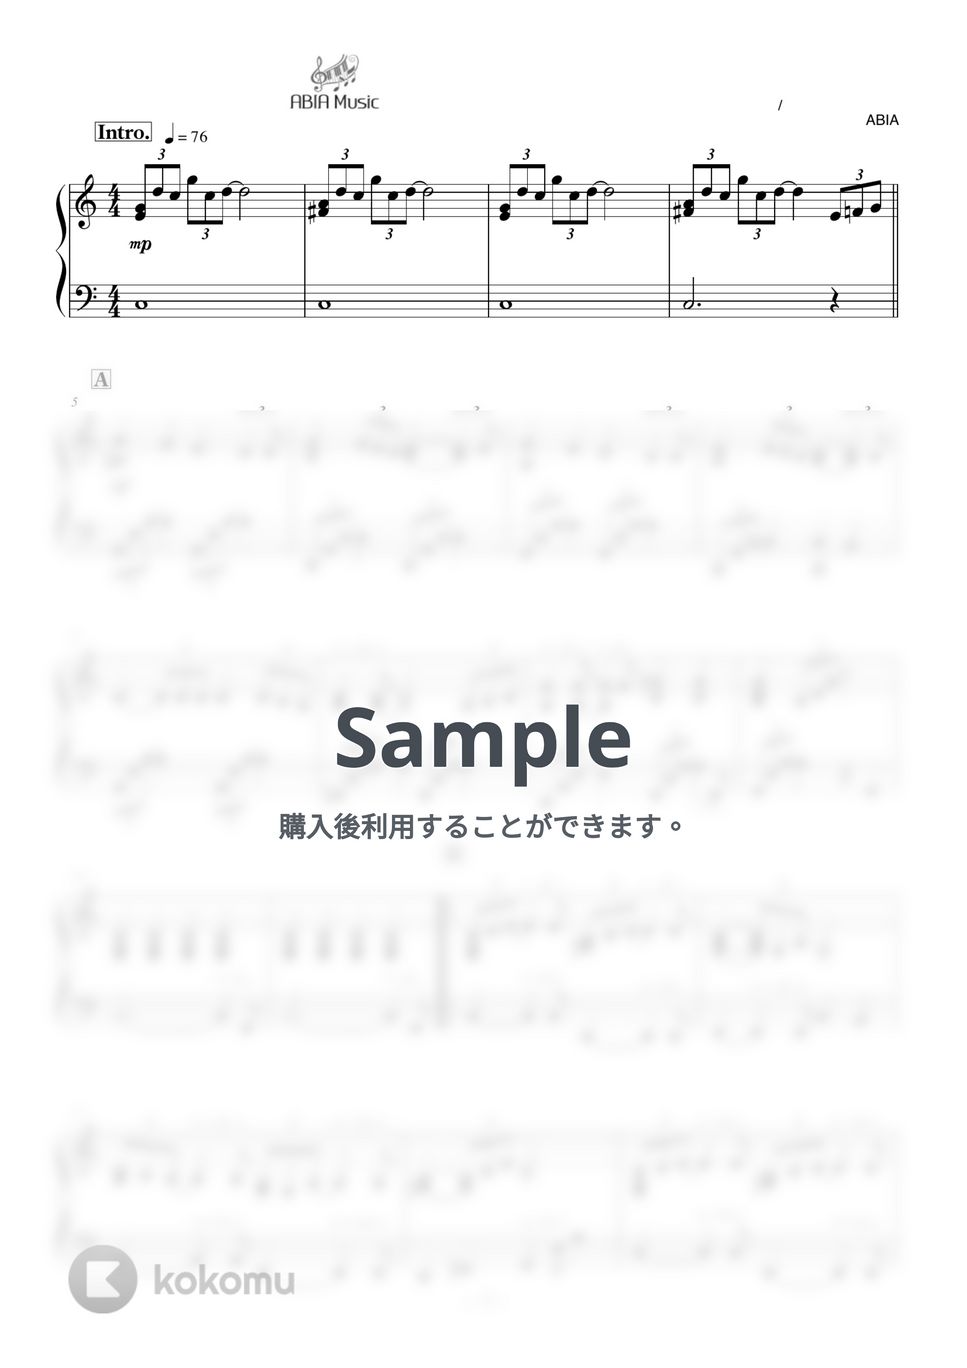 中島みゆき - 時代 by ABIA Music